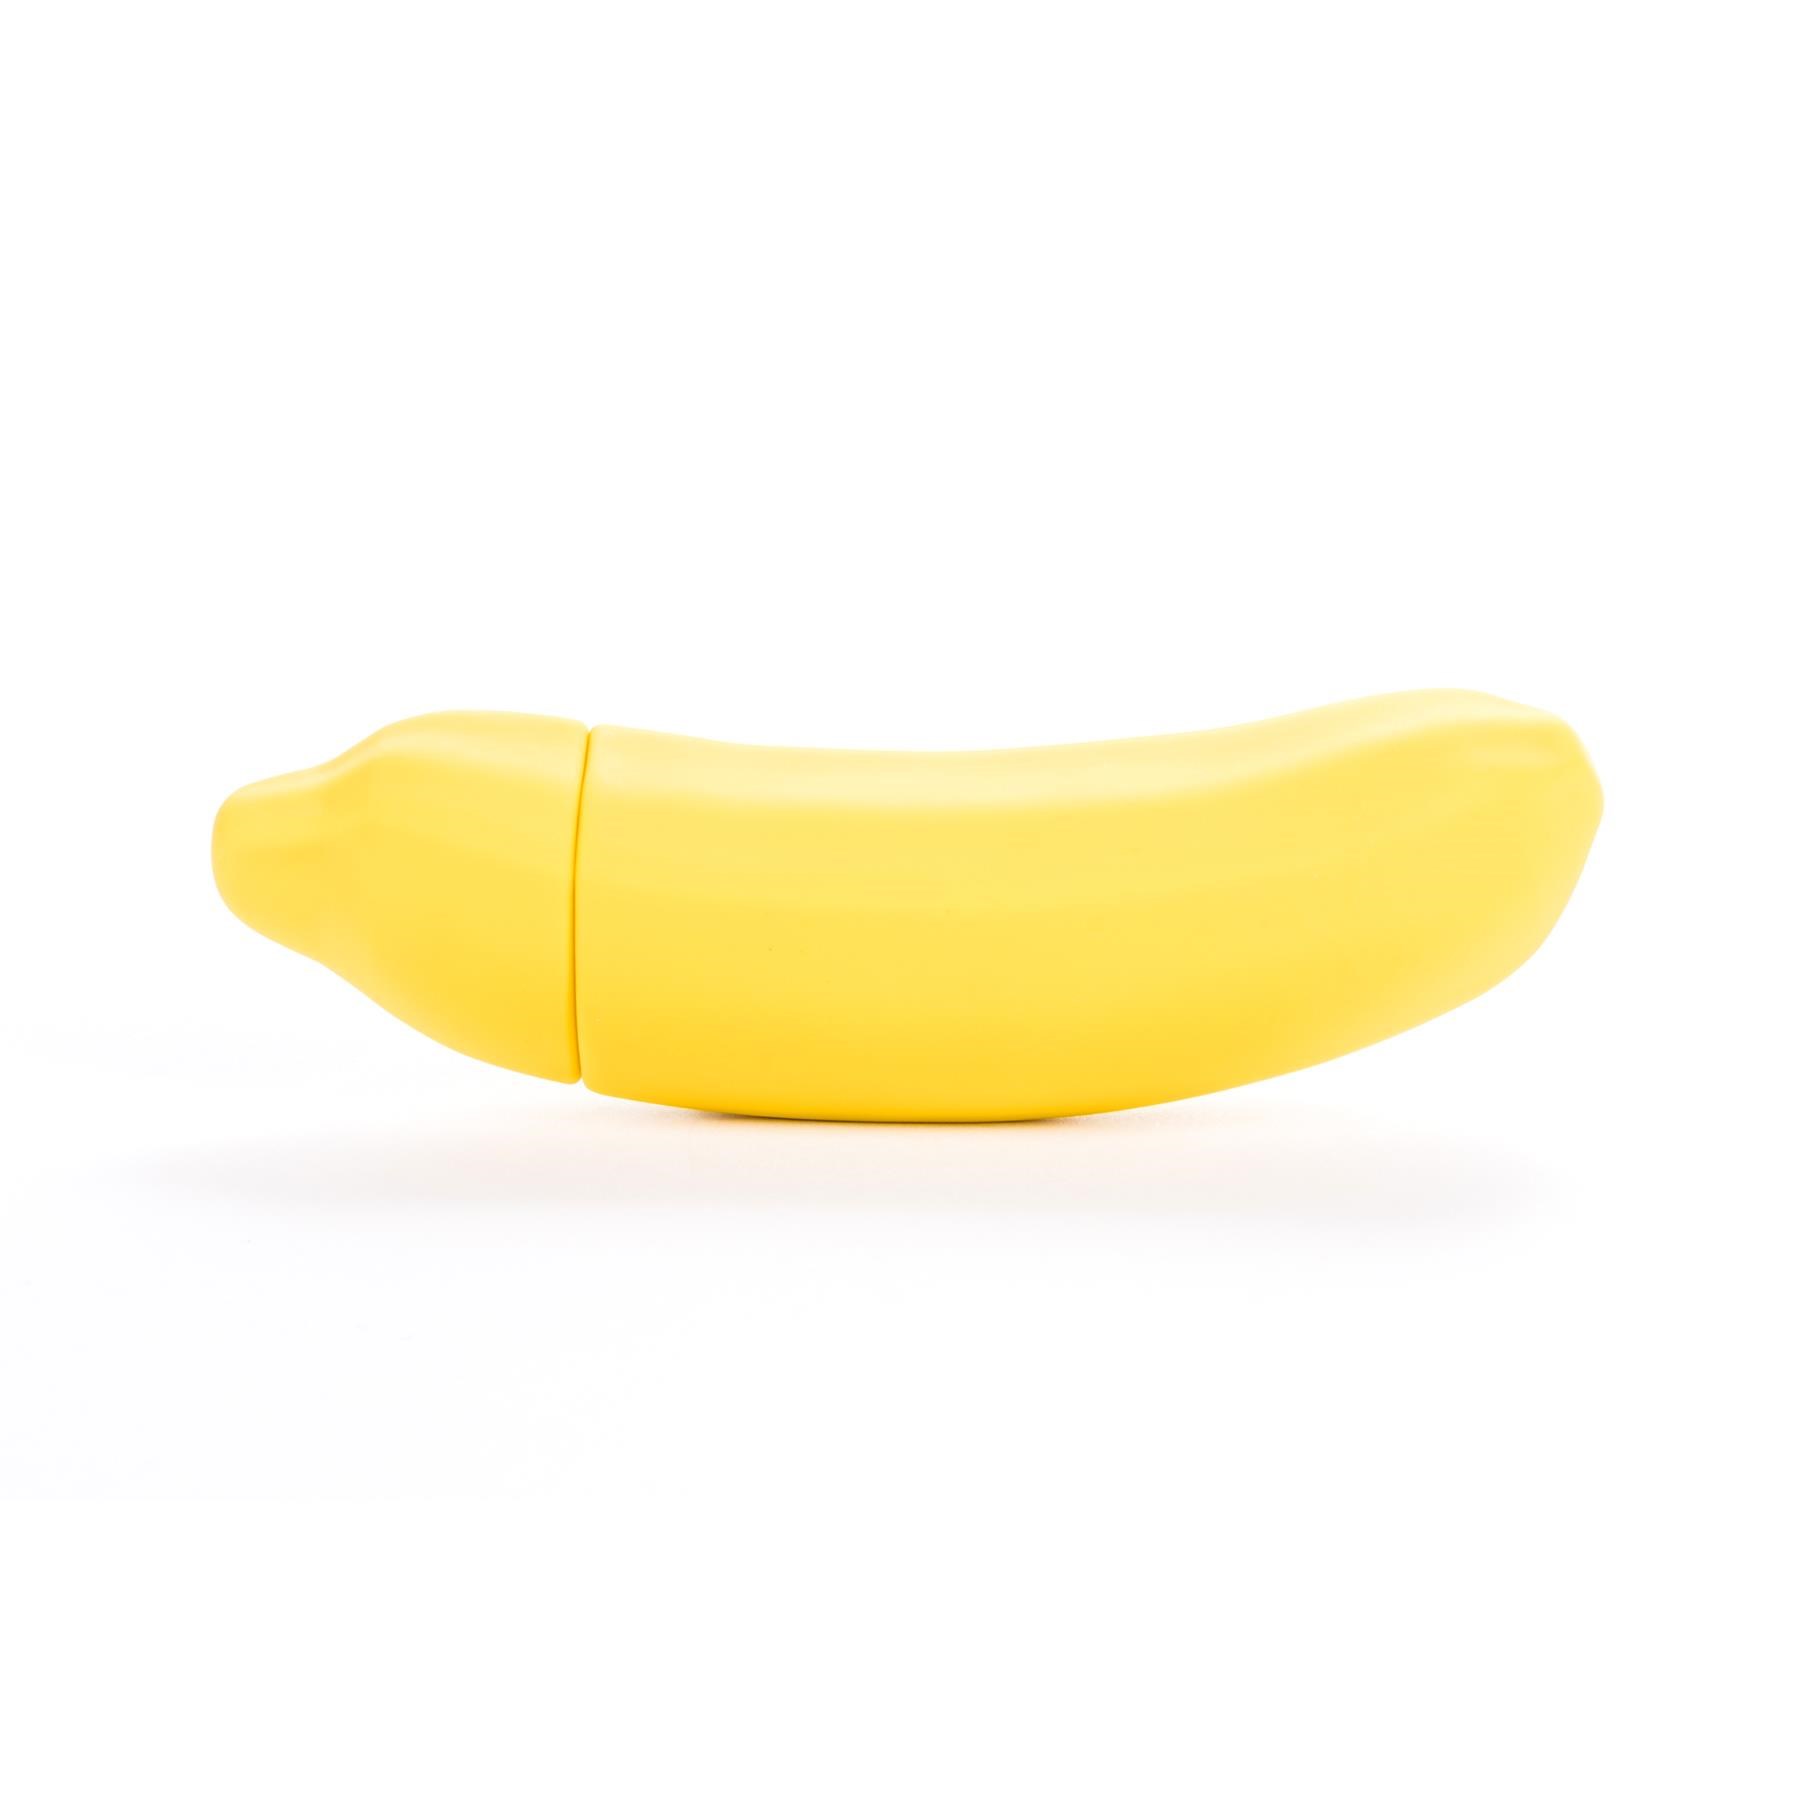 Emojibator Banana Emoji Vibrator - Product Shot #1